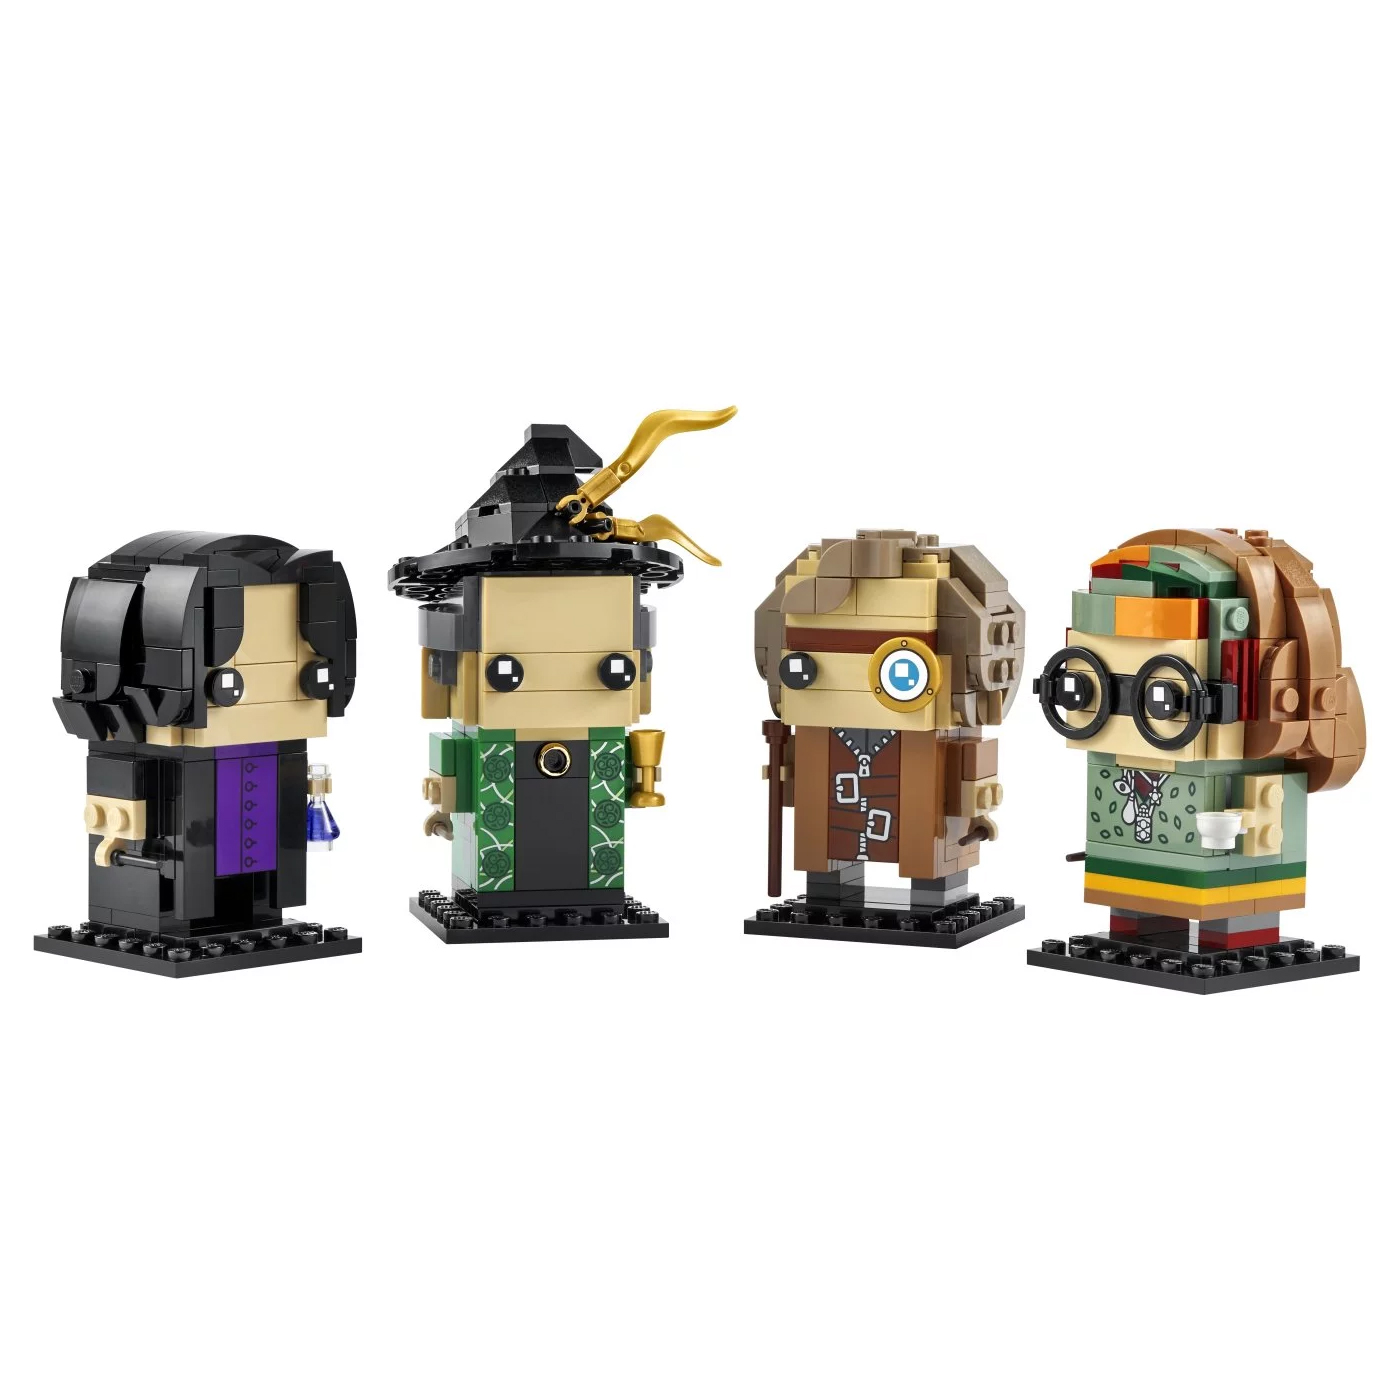 Конструктор Lego BrickHeadz Harry Potter Professors of Hogwarts 40560, 601 деталь конструктор lego brickheadz alex 40624 86 деталей